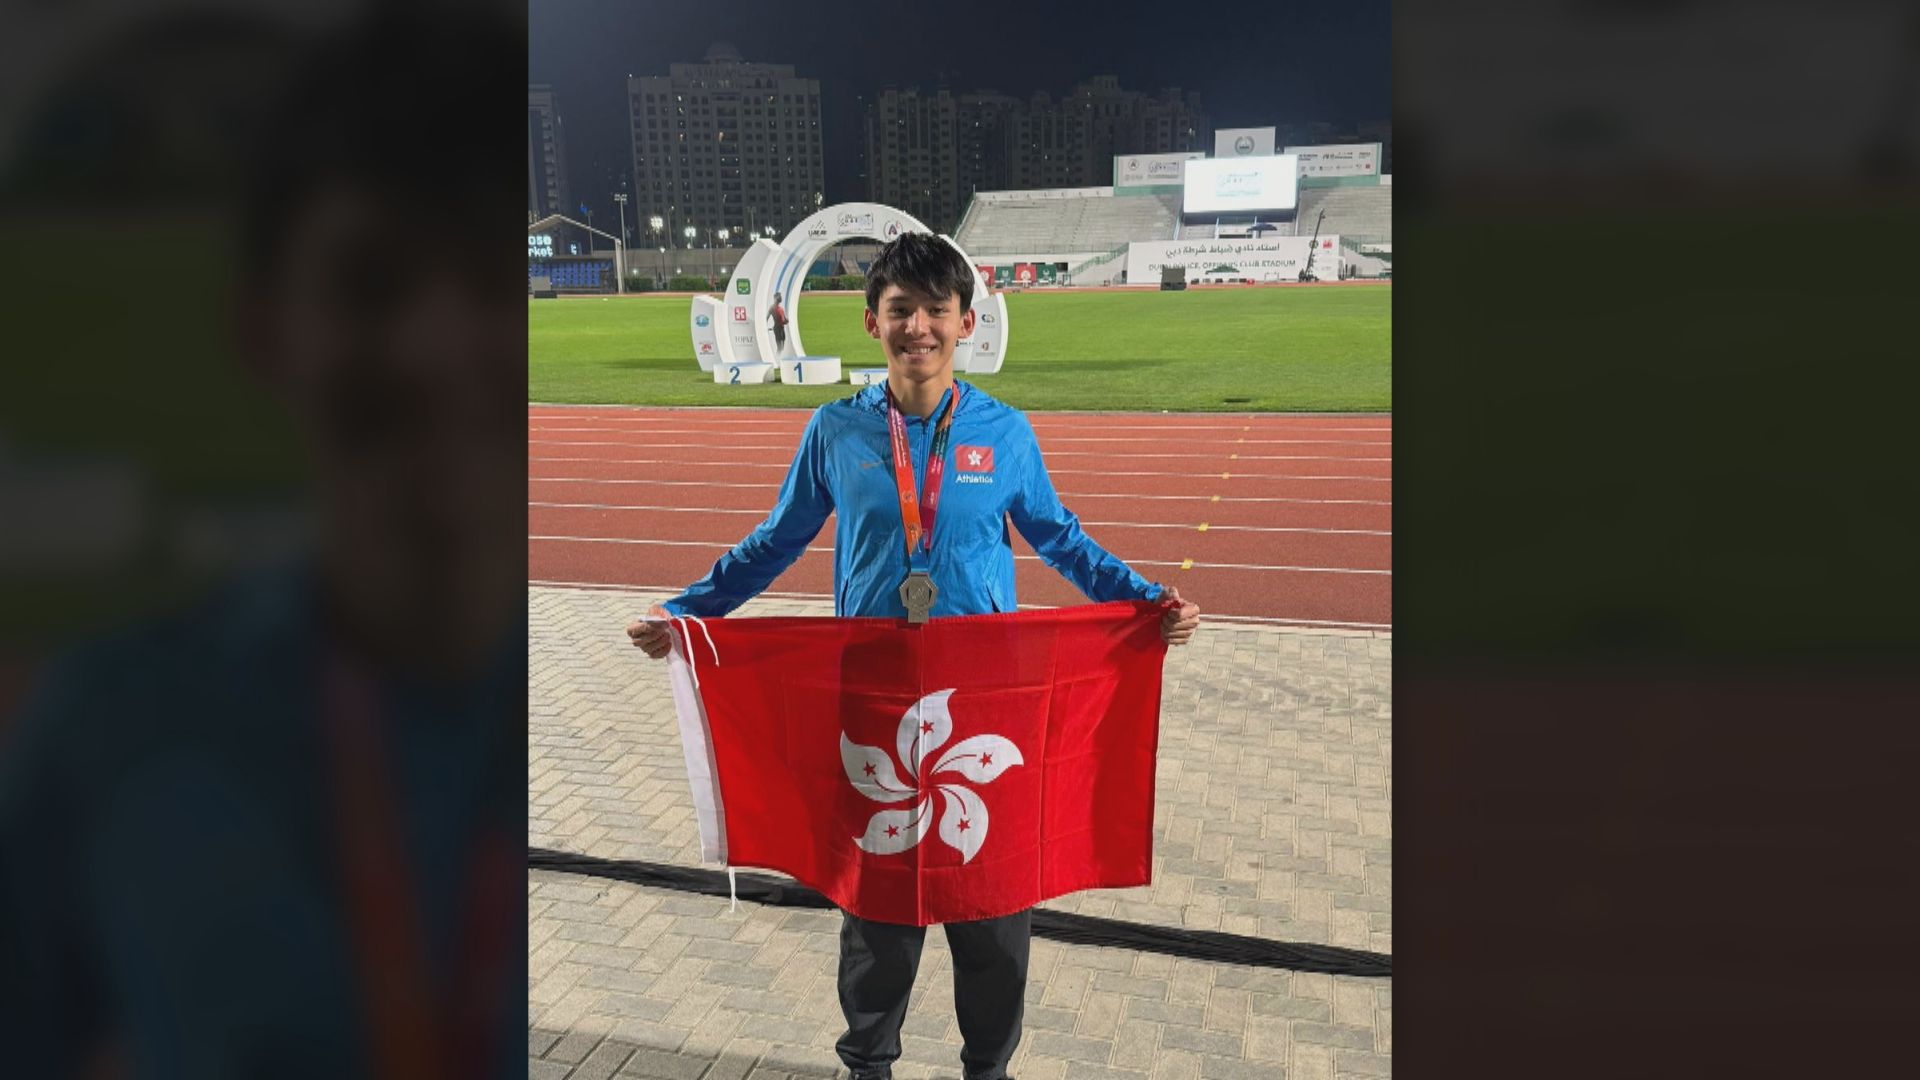 吳君浩於亞青田徑錦標賽200米破香港紀錄